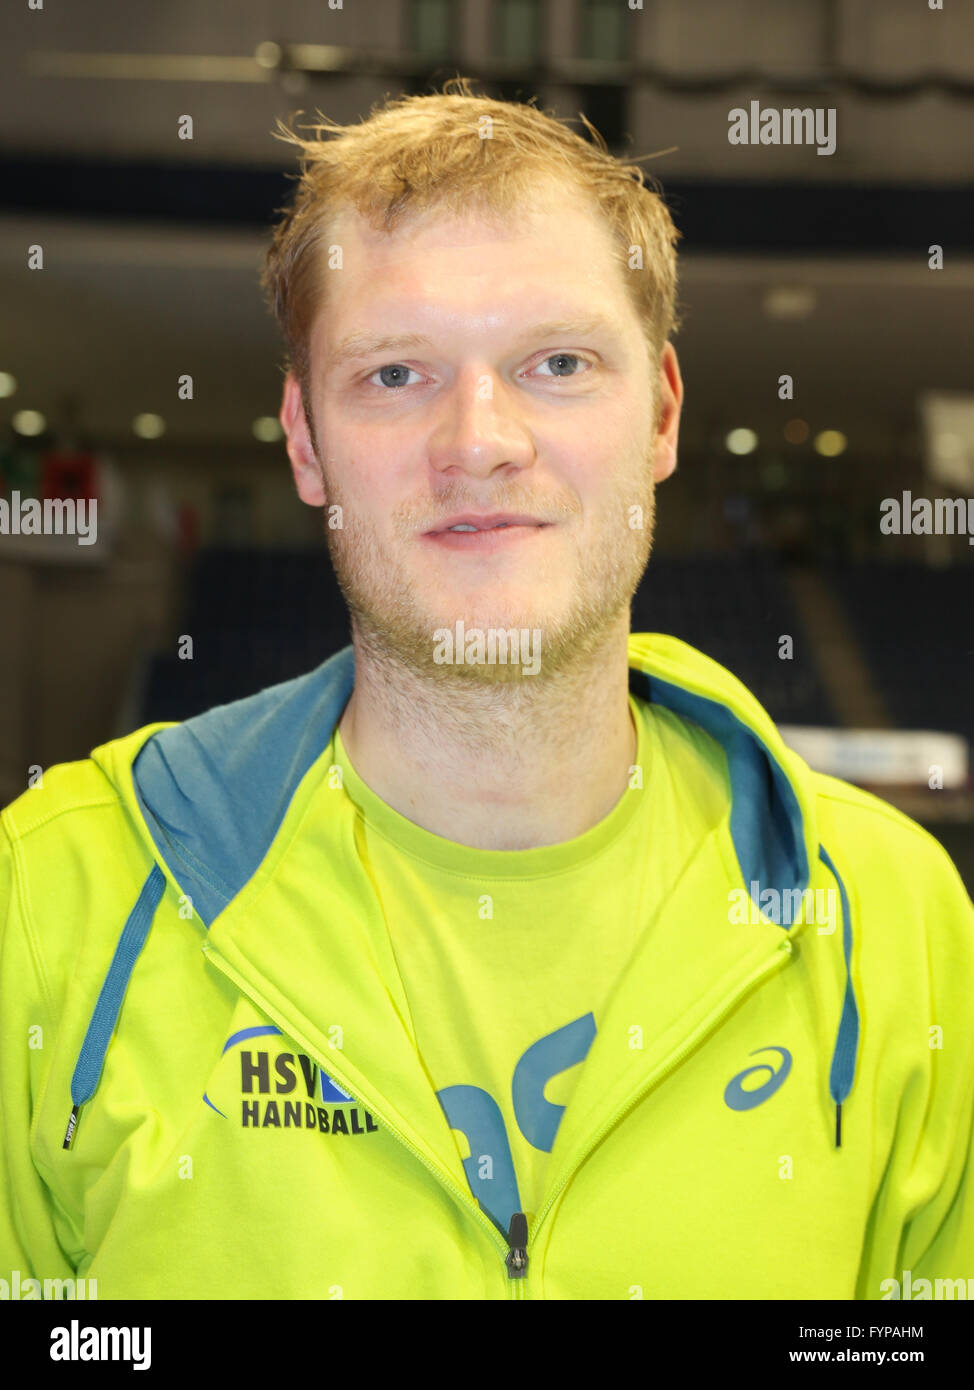 Goalkeeper Johannes Bitter (HSV) Stock Photo